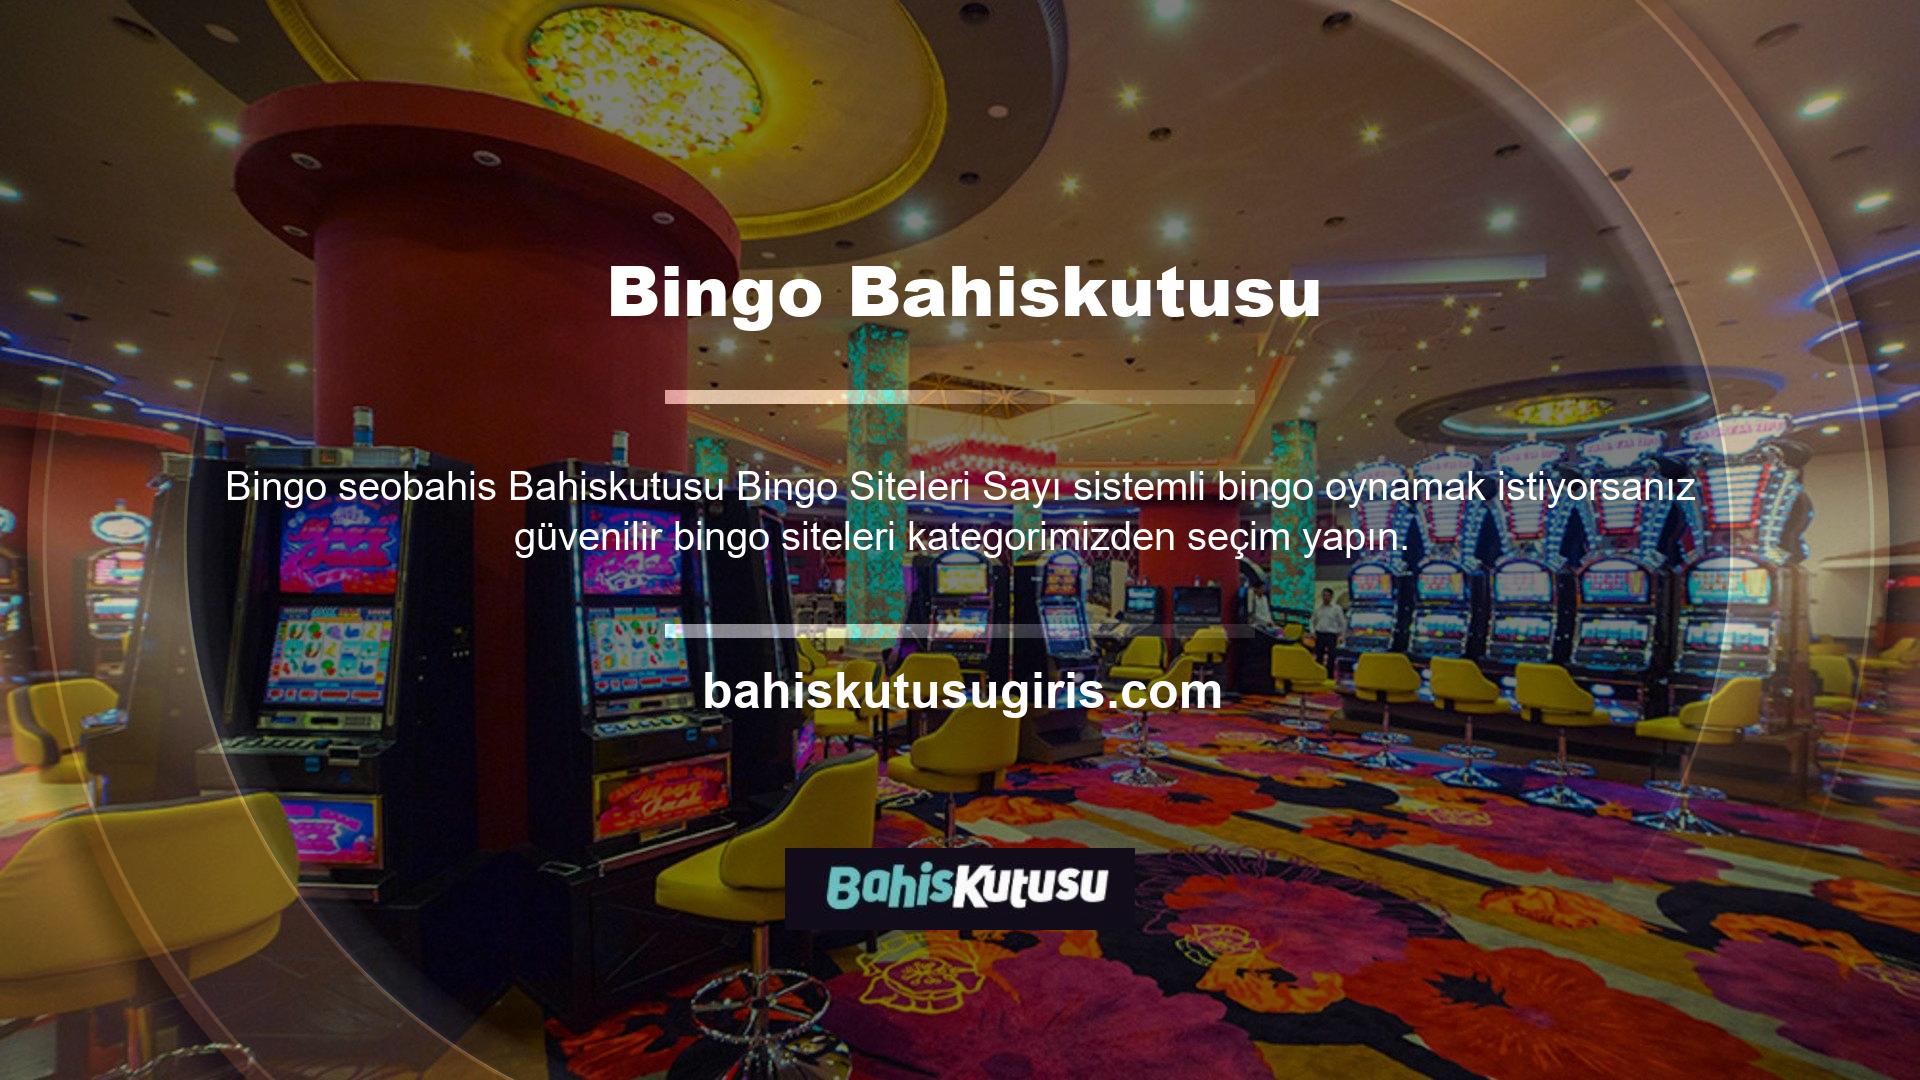 Bingo, casino oyunlarının önemli ve popüler bir kategorisidir